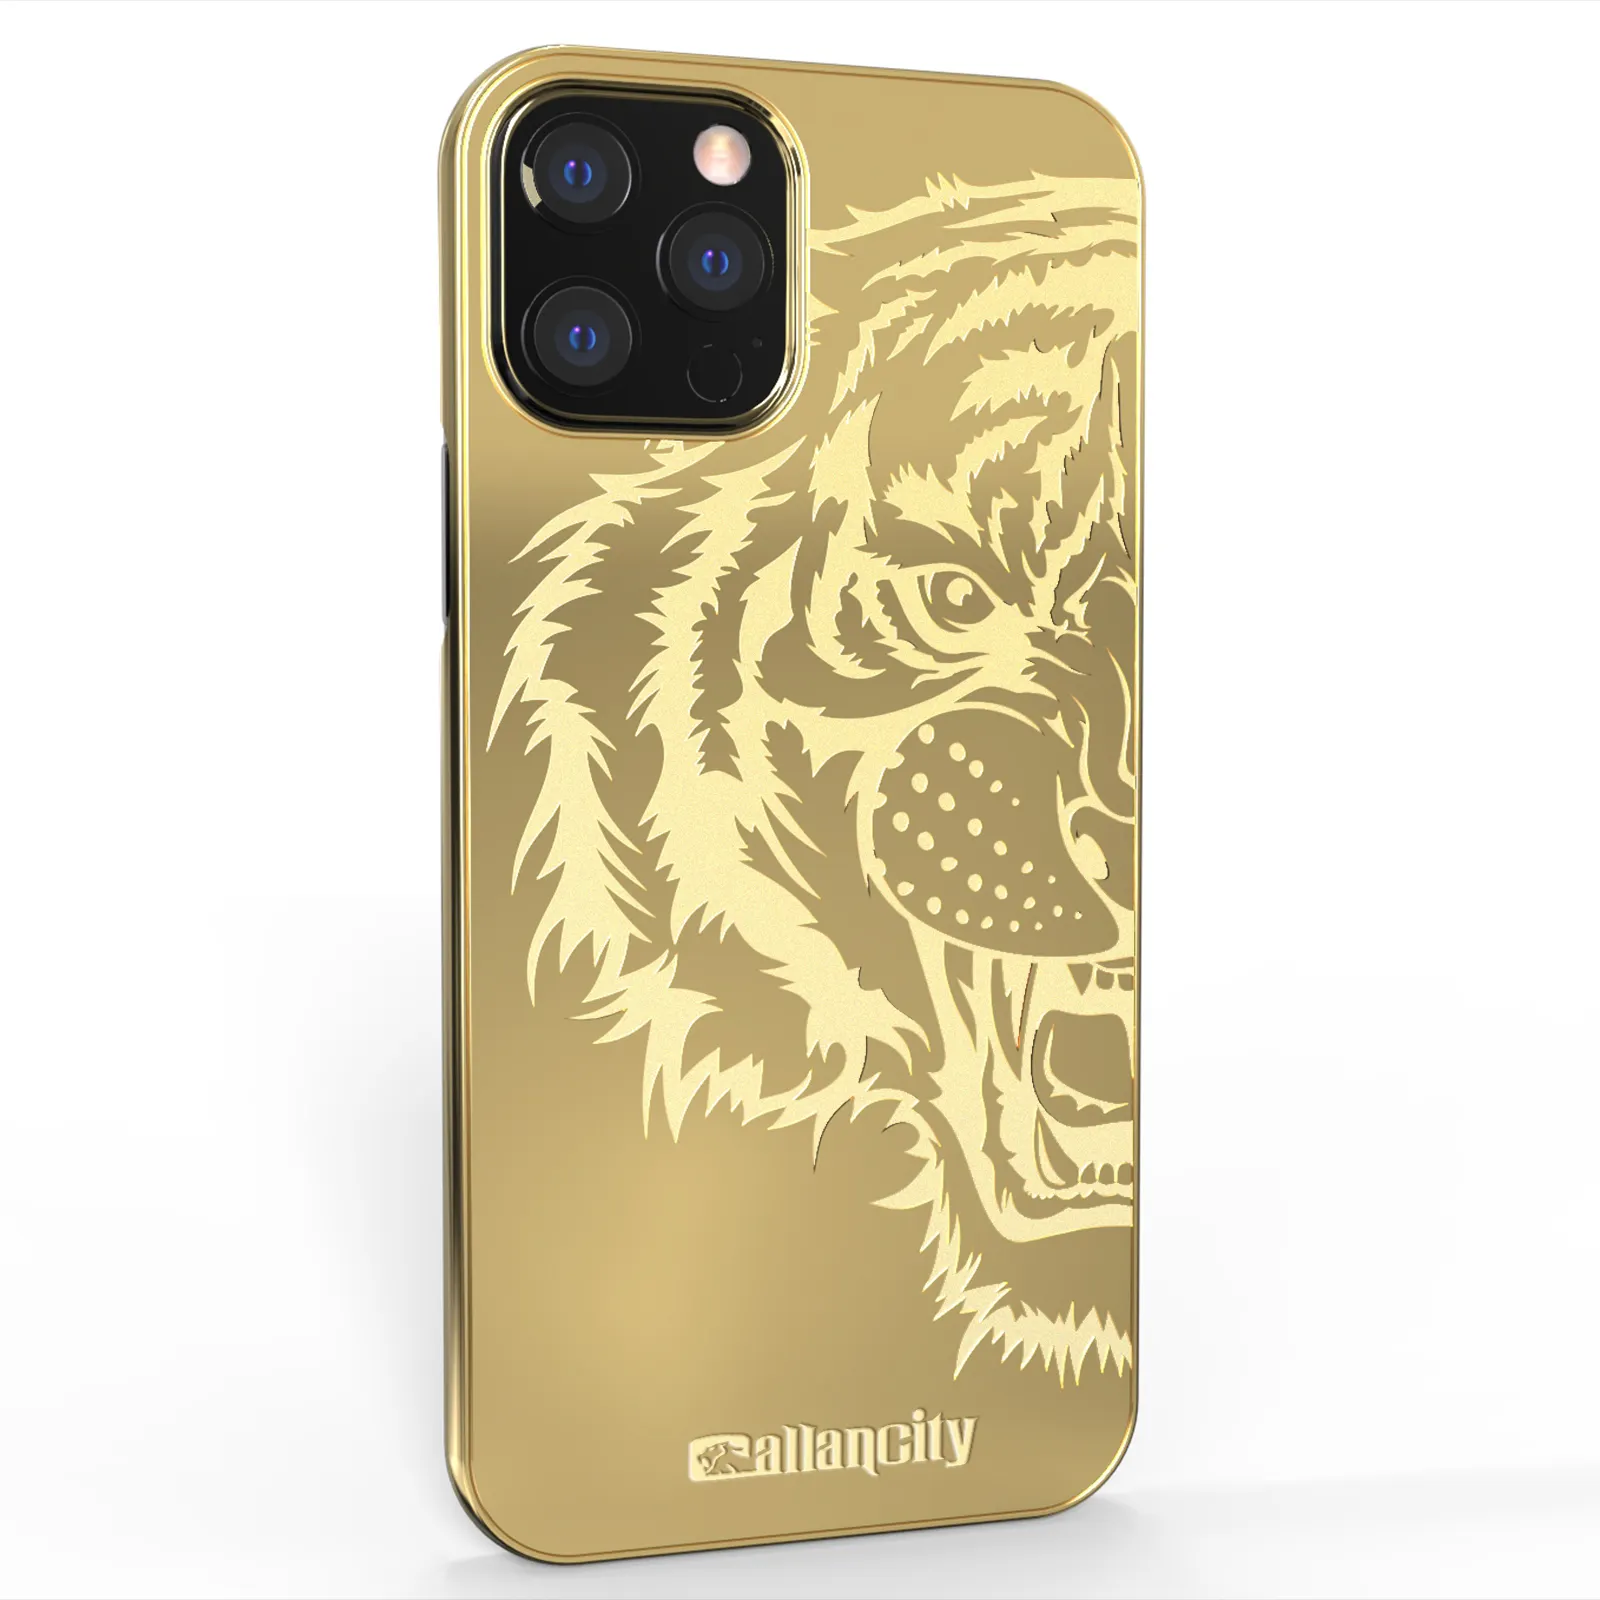 Защитный чехол для телефона Callancity с изображением Льва, совместимый с iPhone 13 серии, Роскошный Жесткий металлический чехол для телефона из поликарбоната